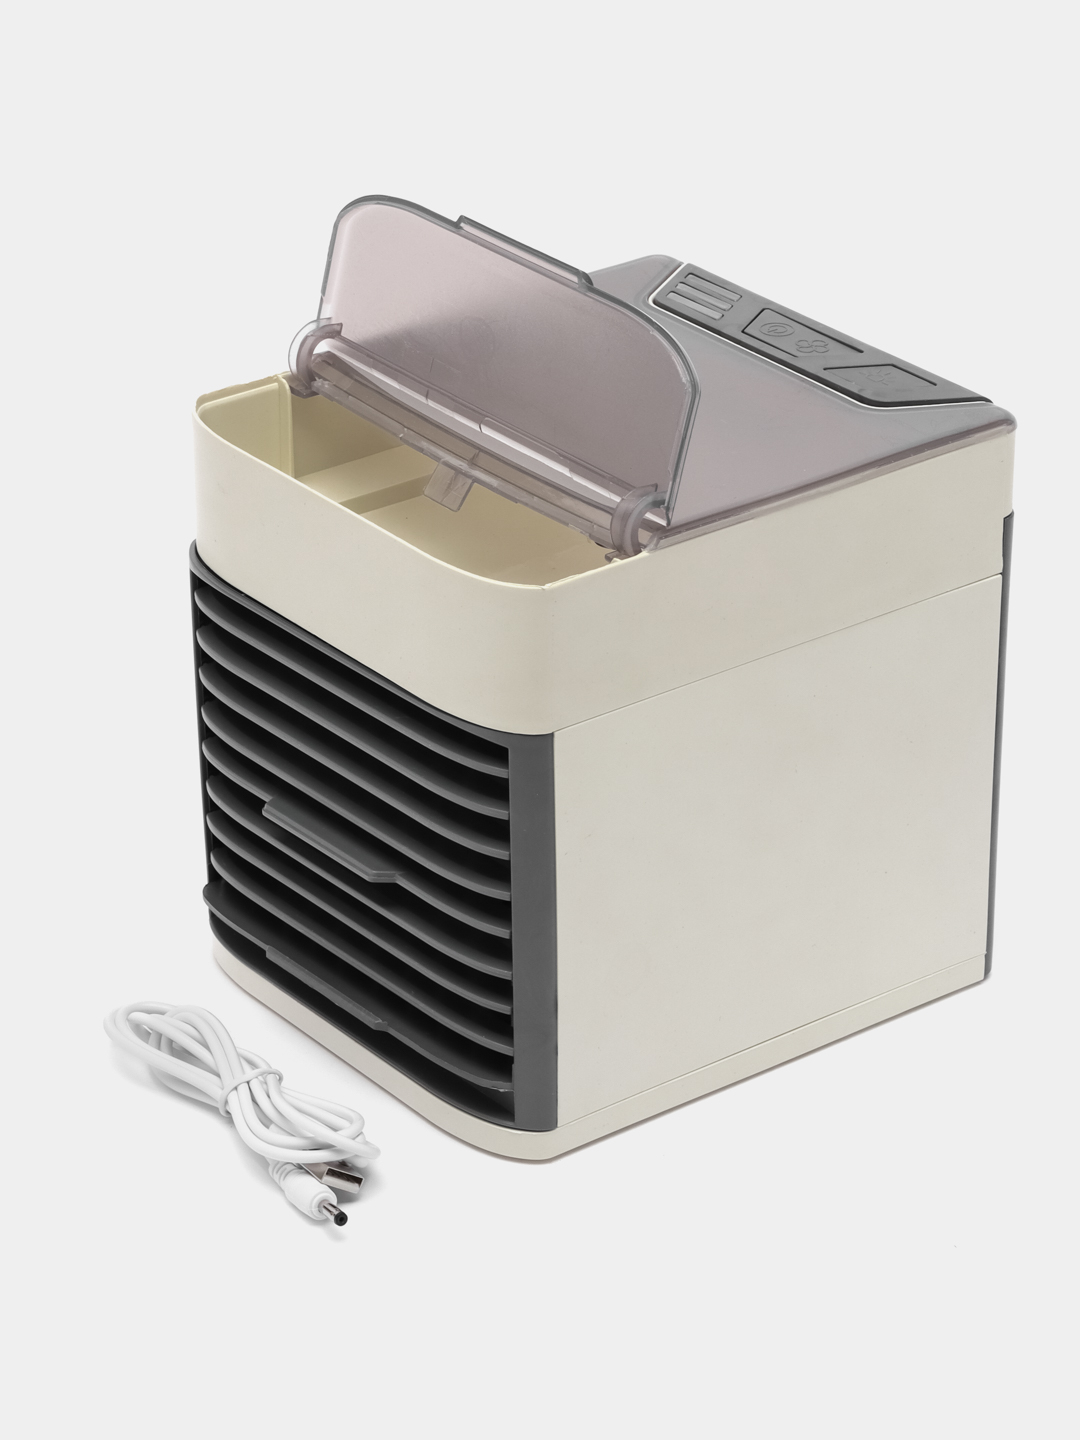  мини-кондиционер, увлажнитель и охладитель воздуха .